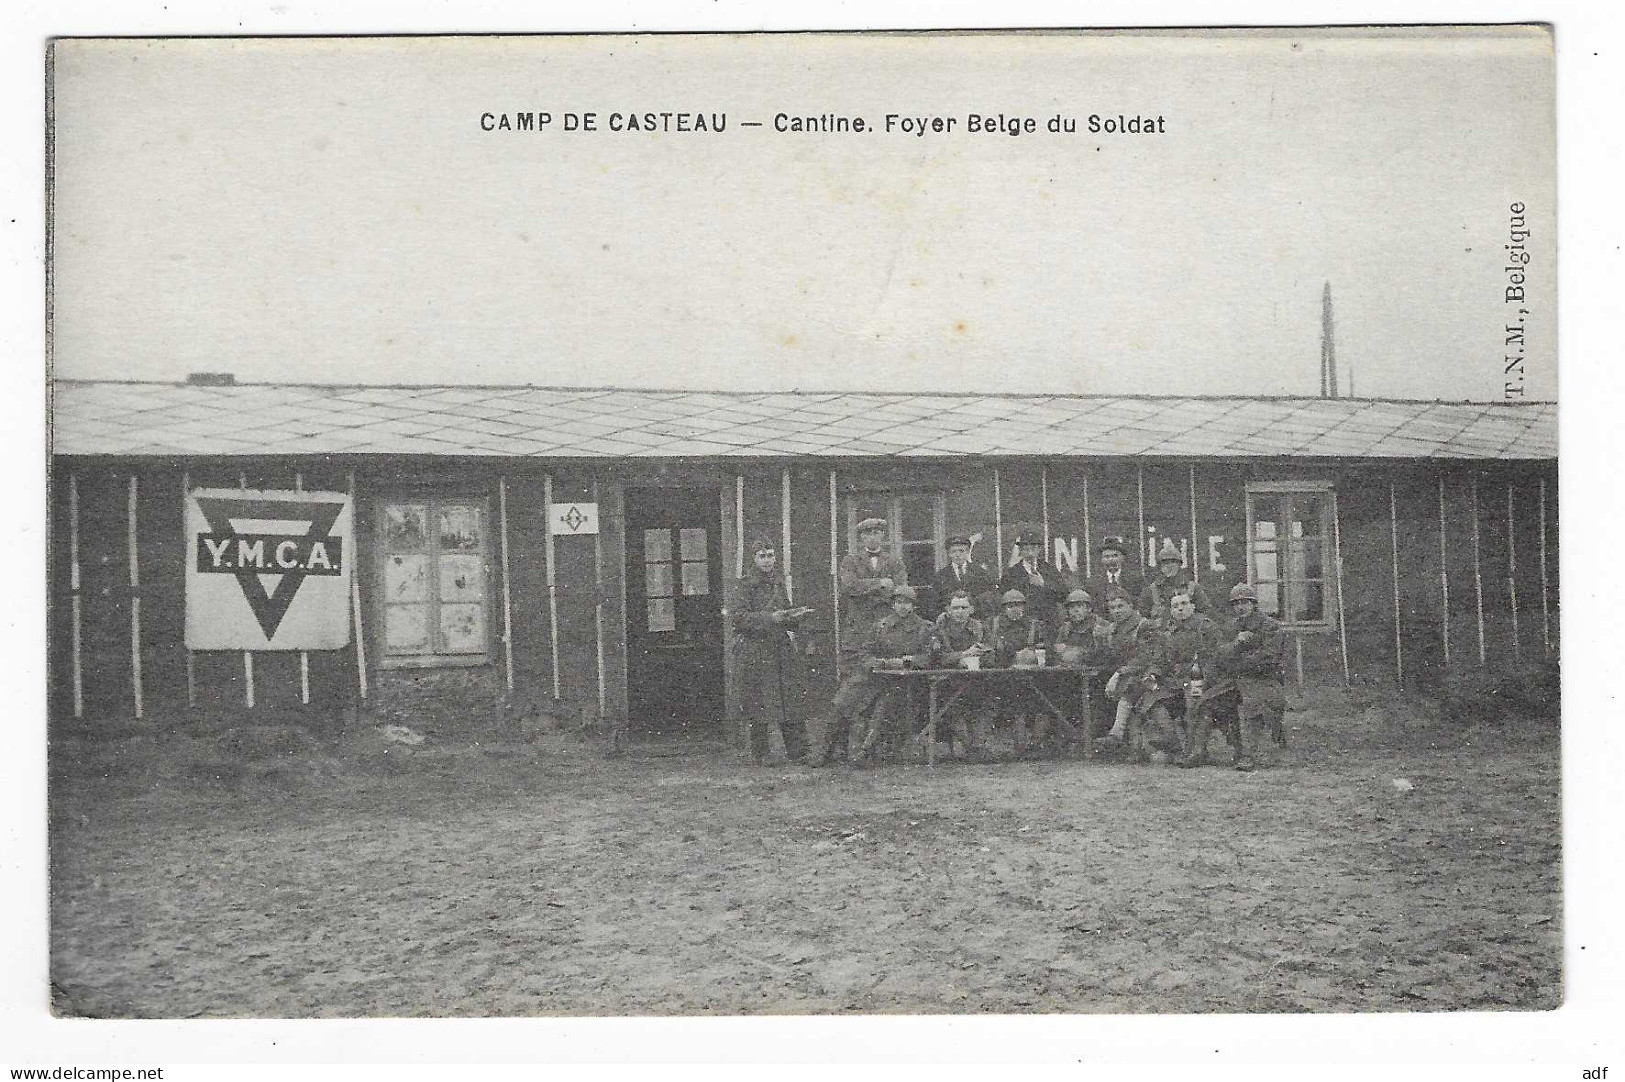 CPA ANIMEE CAMP DE CASTEAU, ANIMATION, CANTINE, FOYER BELGE DU SOLDAT, PUB Y.M.C.A YMCA, SOLDATS, MILITARIA, BELGIQUE - Soignies